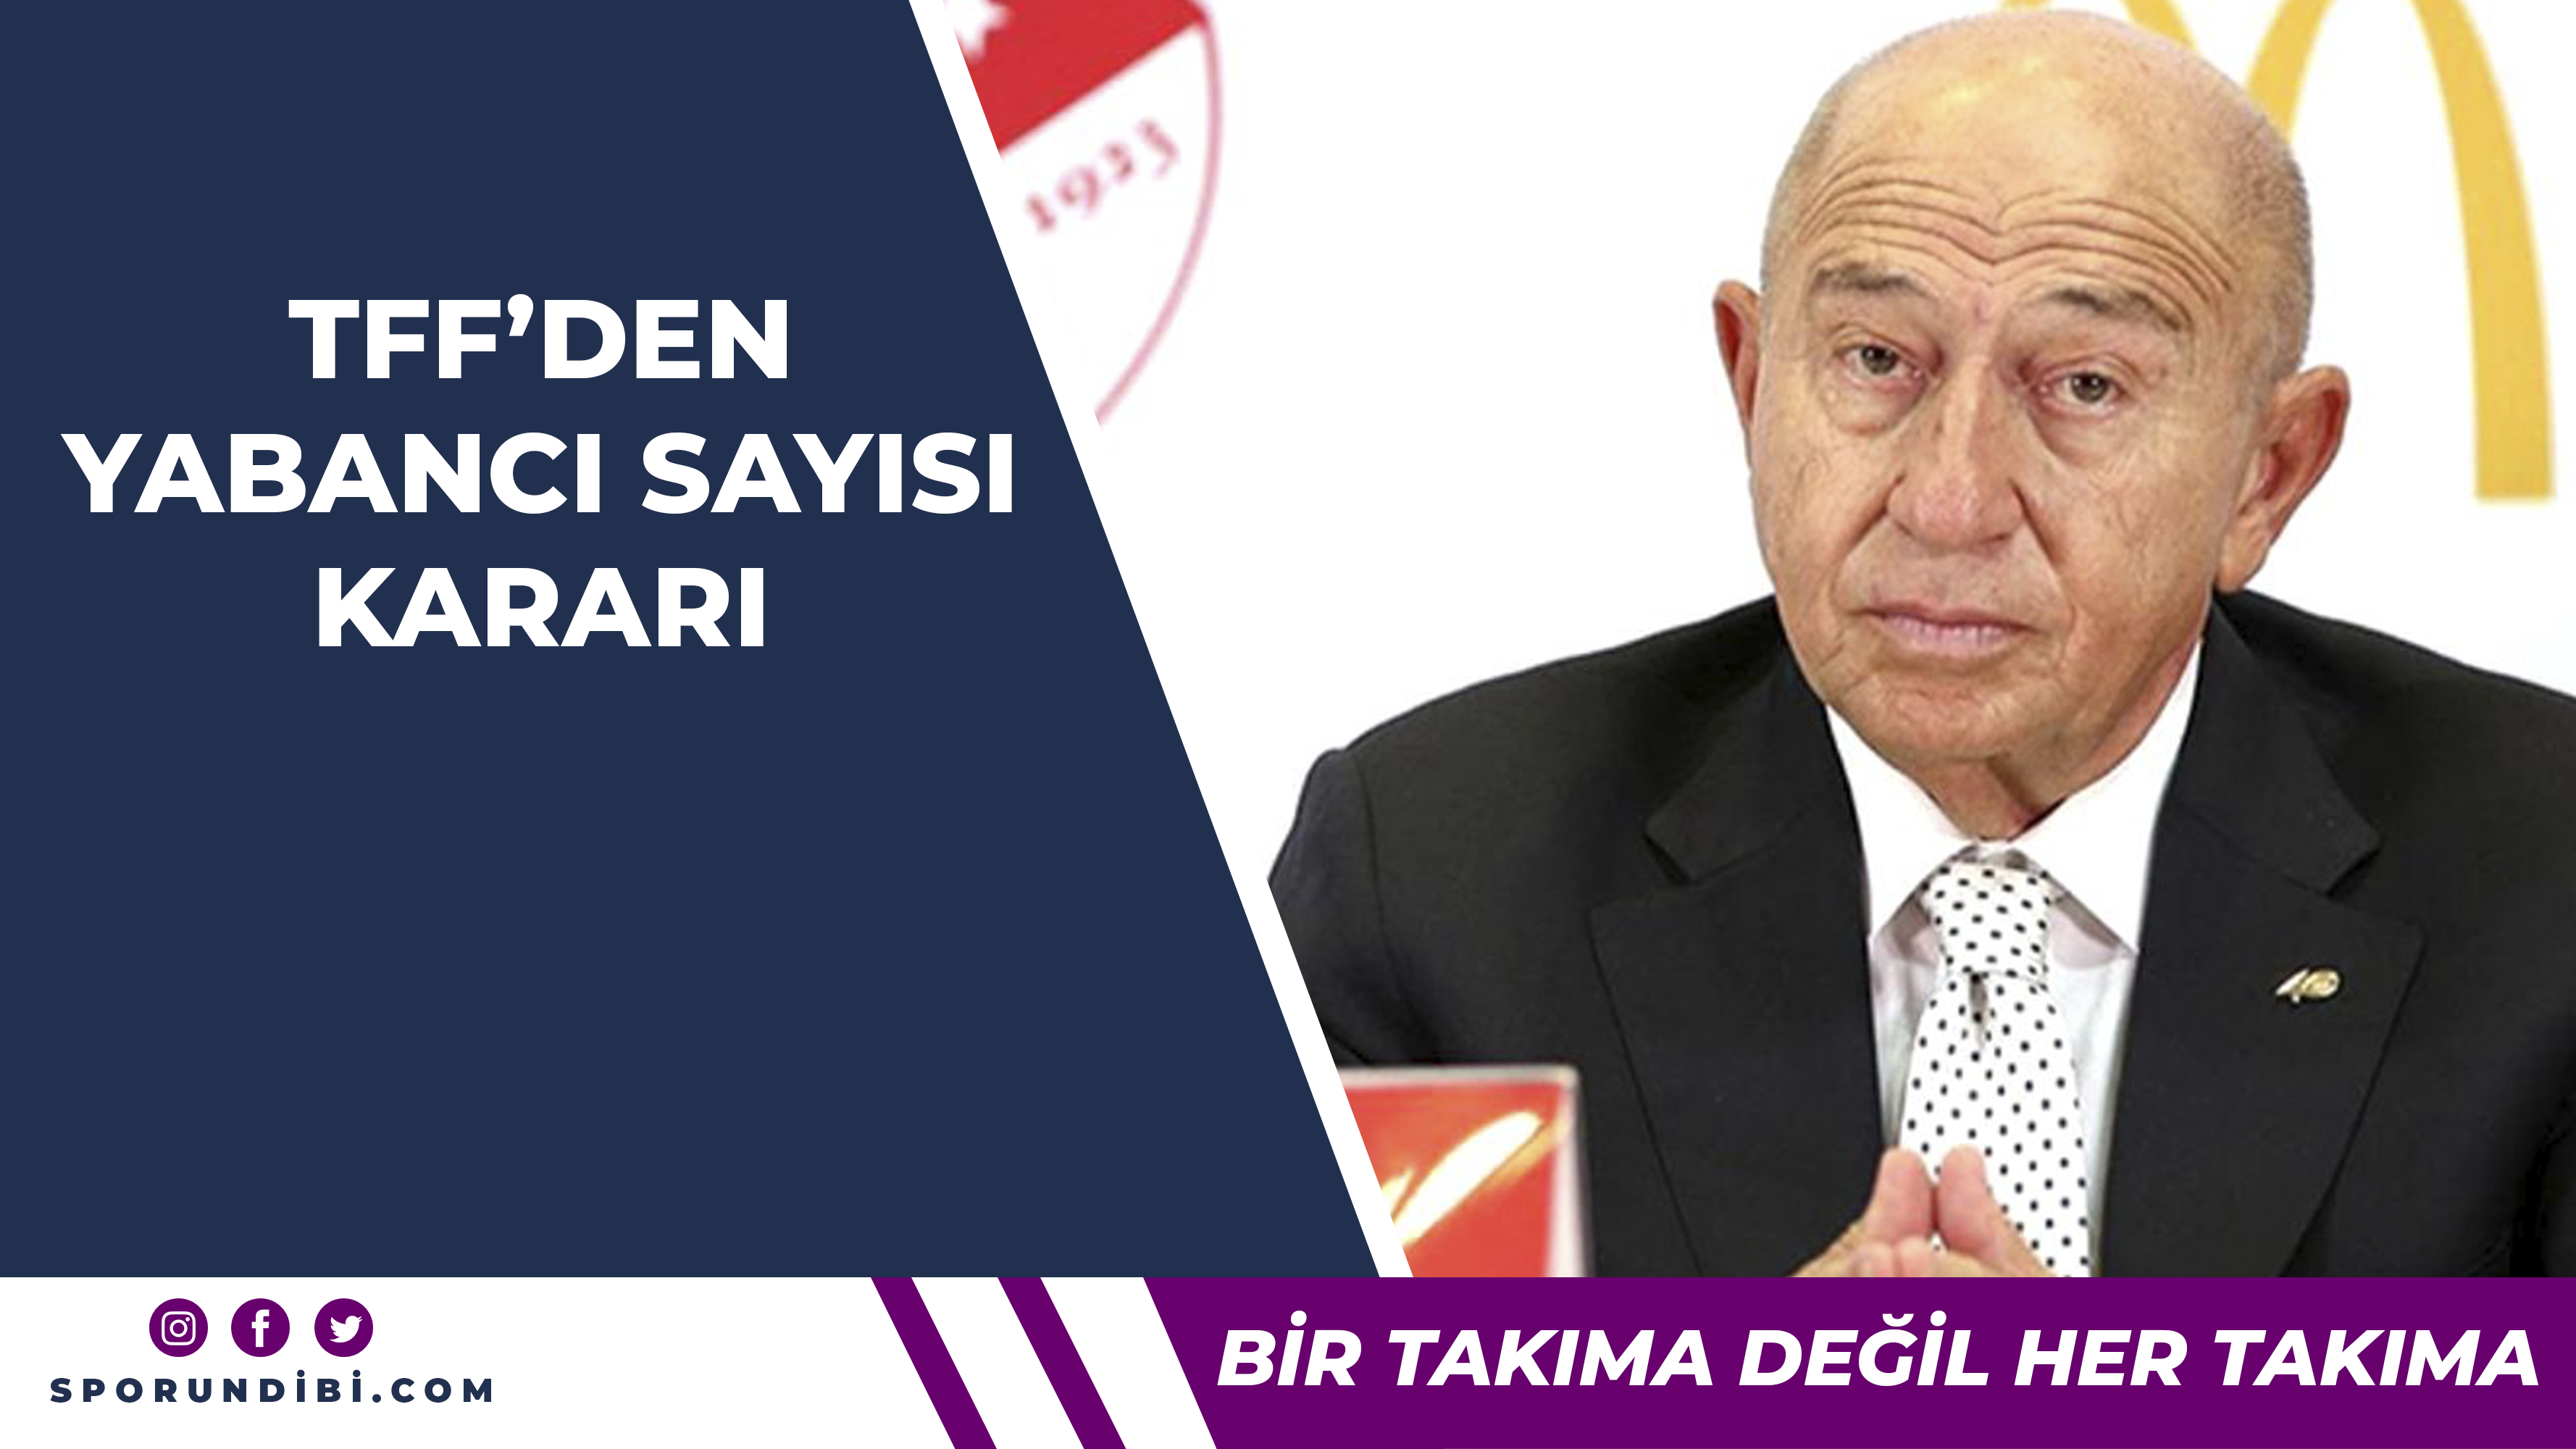 TFF Başkanı Özdemir'den yabancı sayısına ilişkin yeni açıklama